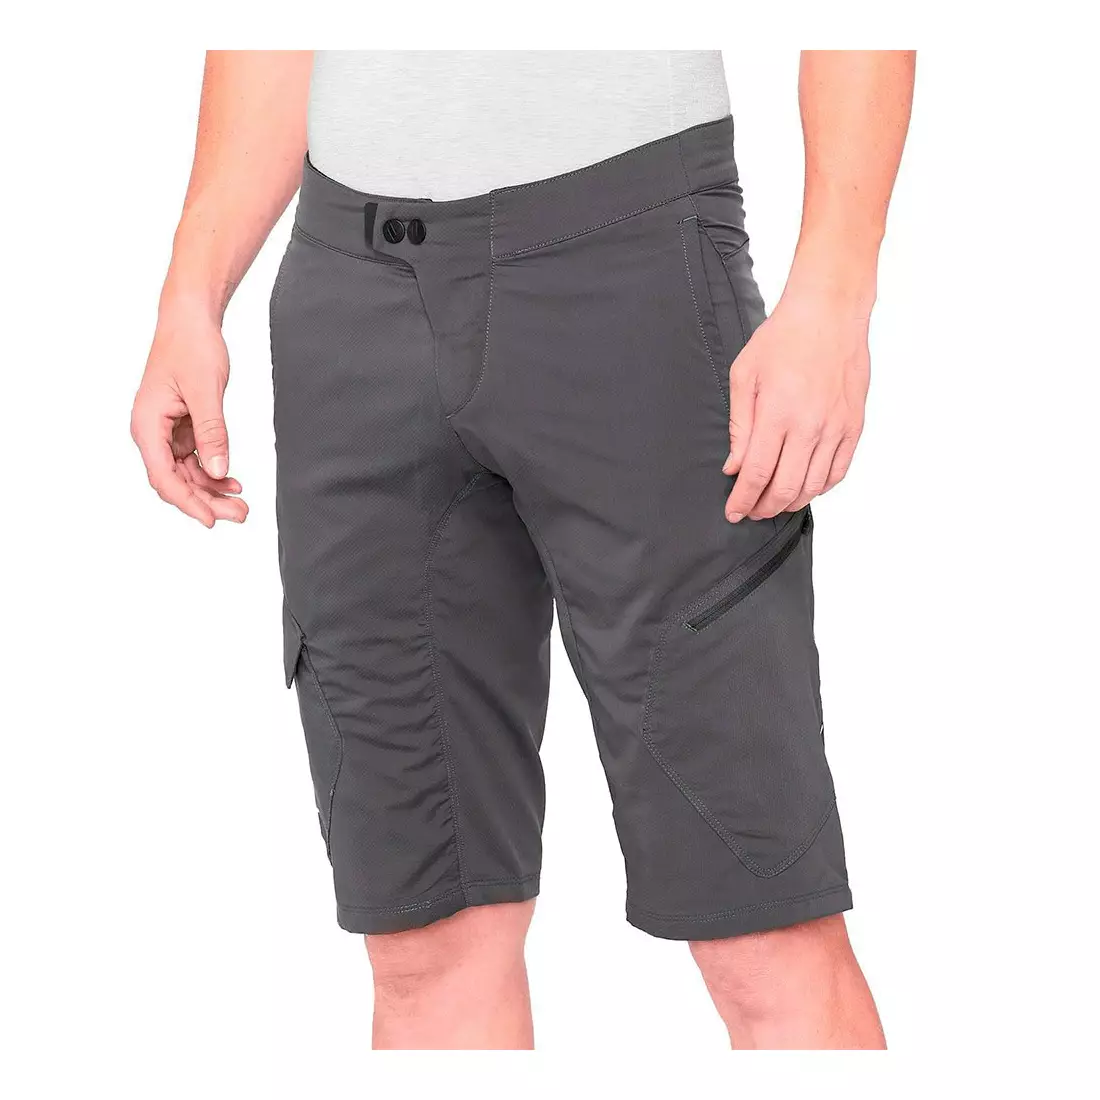 100% RIDECAMP Men's cycling shorts, grey